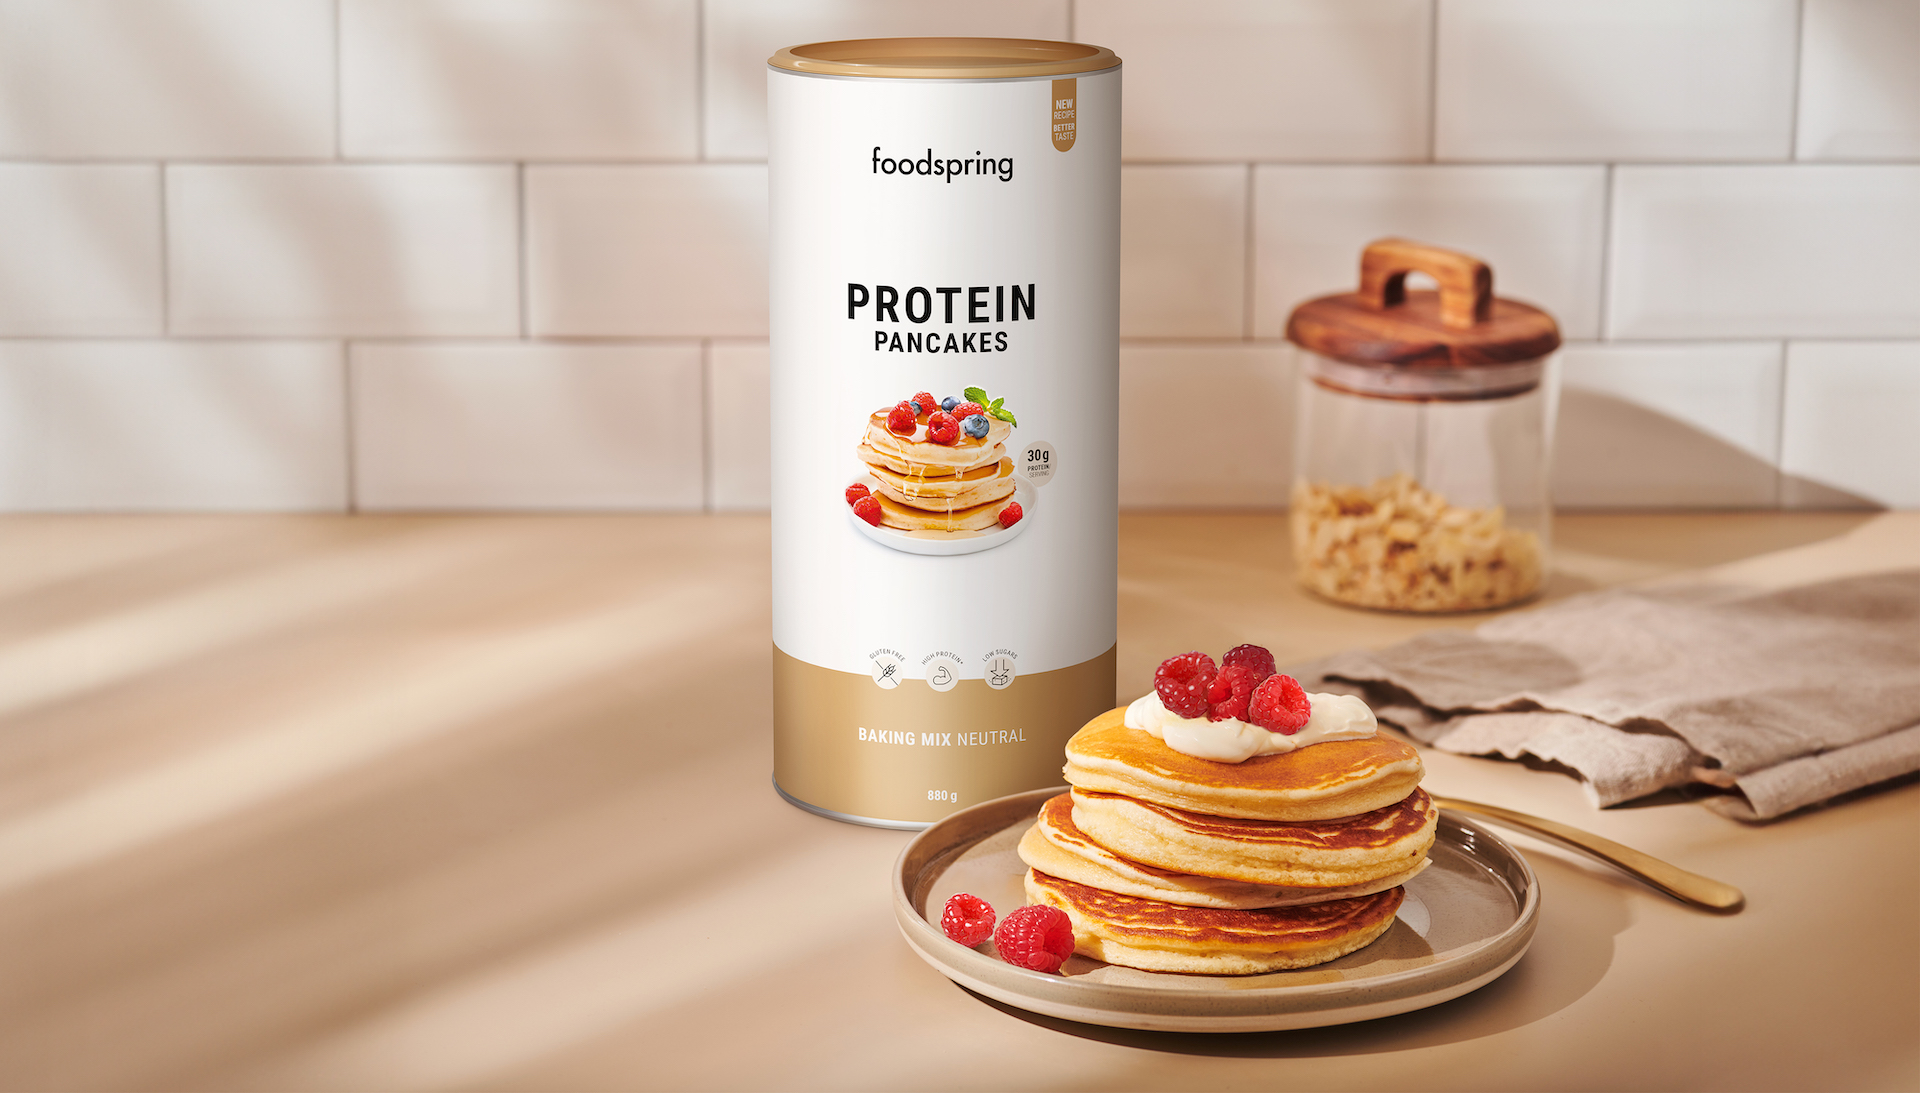 I Pancake Proteici di Foodspring con 30 g di proteine e meno zucchero -  Myfitnessmagazine